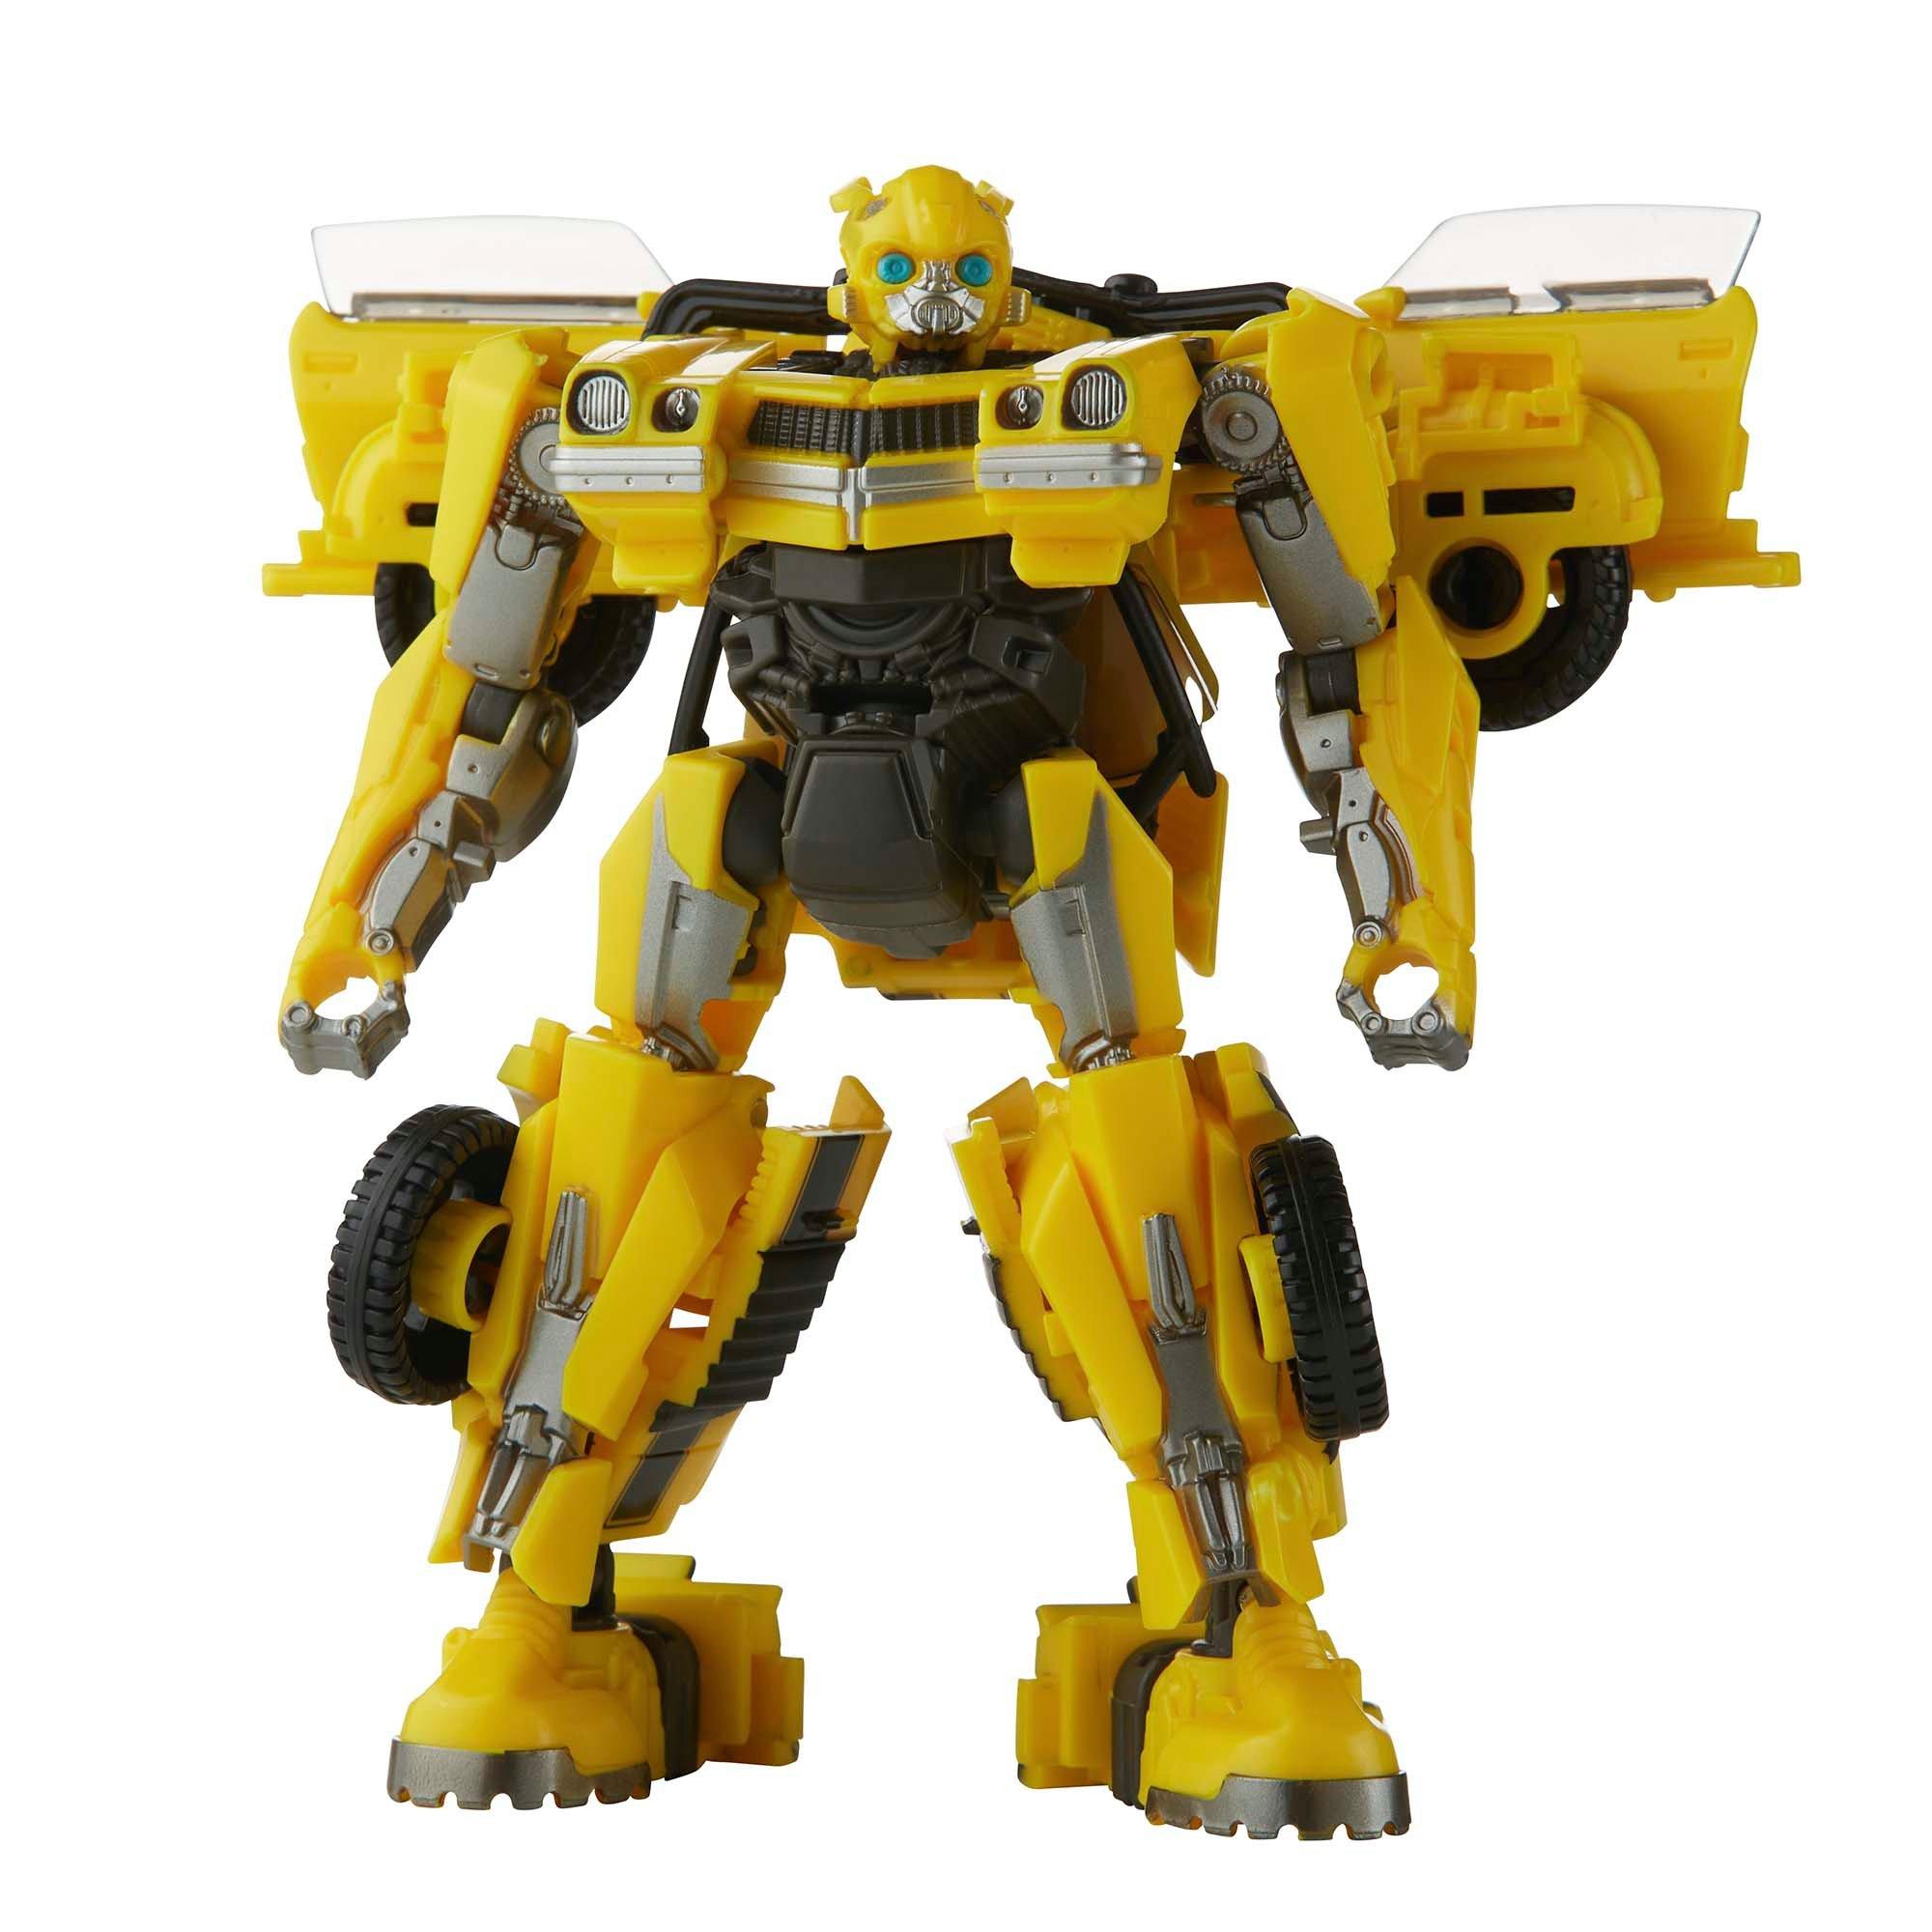 Hasbro Transformers Studio Series Deluxe Class Bumblebee 4.5-in